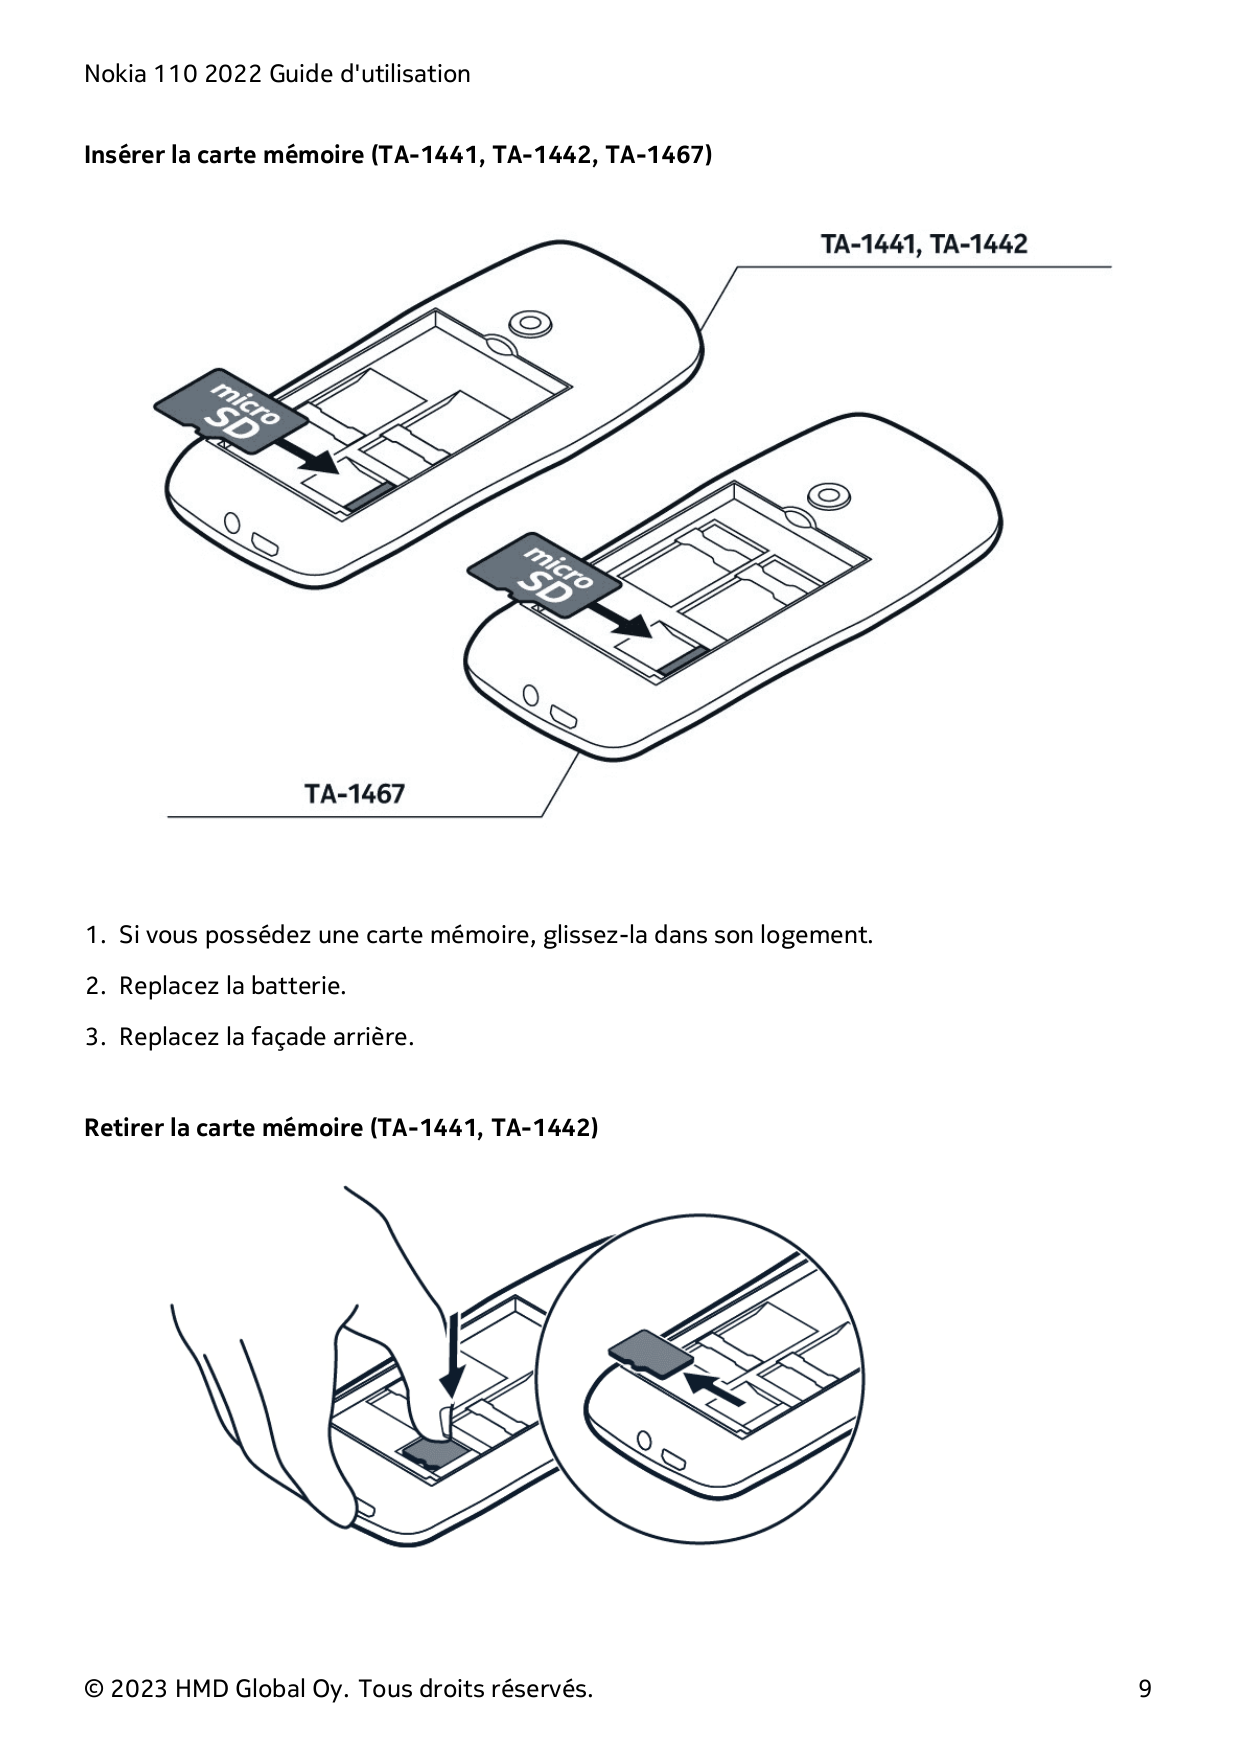 Nokia 110 2022 Guide d'utilisationInsérer la carte mémoire (TA-1441, TA-1442, TA-1467)1. Si vous possédez une carte mémoire, gli